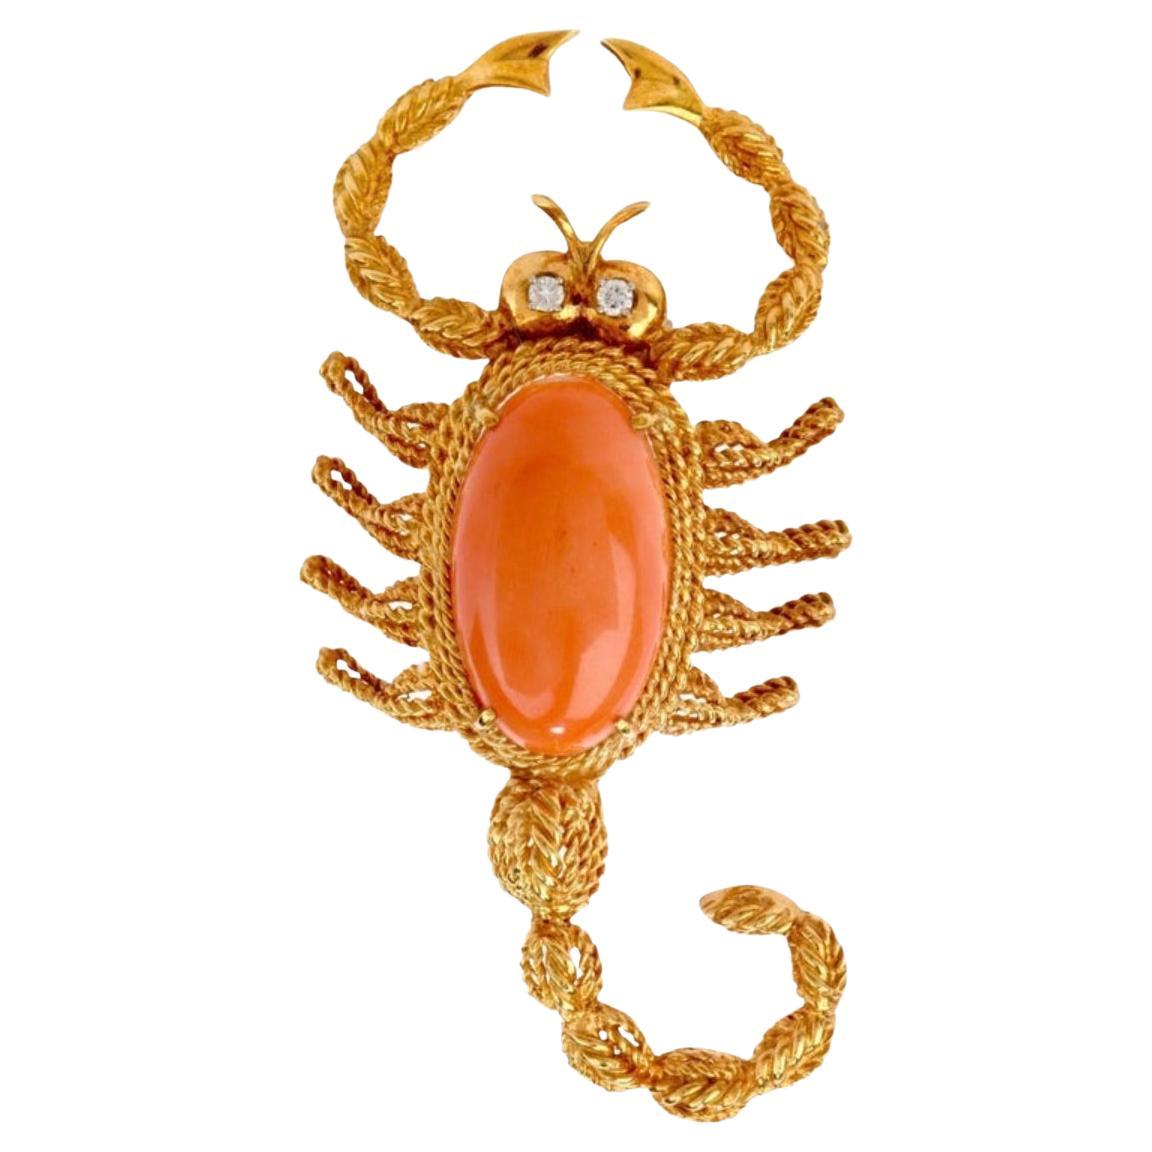 Vintage SkorpionDiamant Koralle 18 Karat Gold Pin Brosche